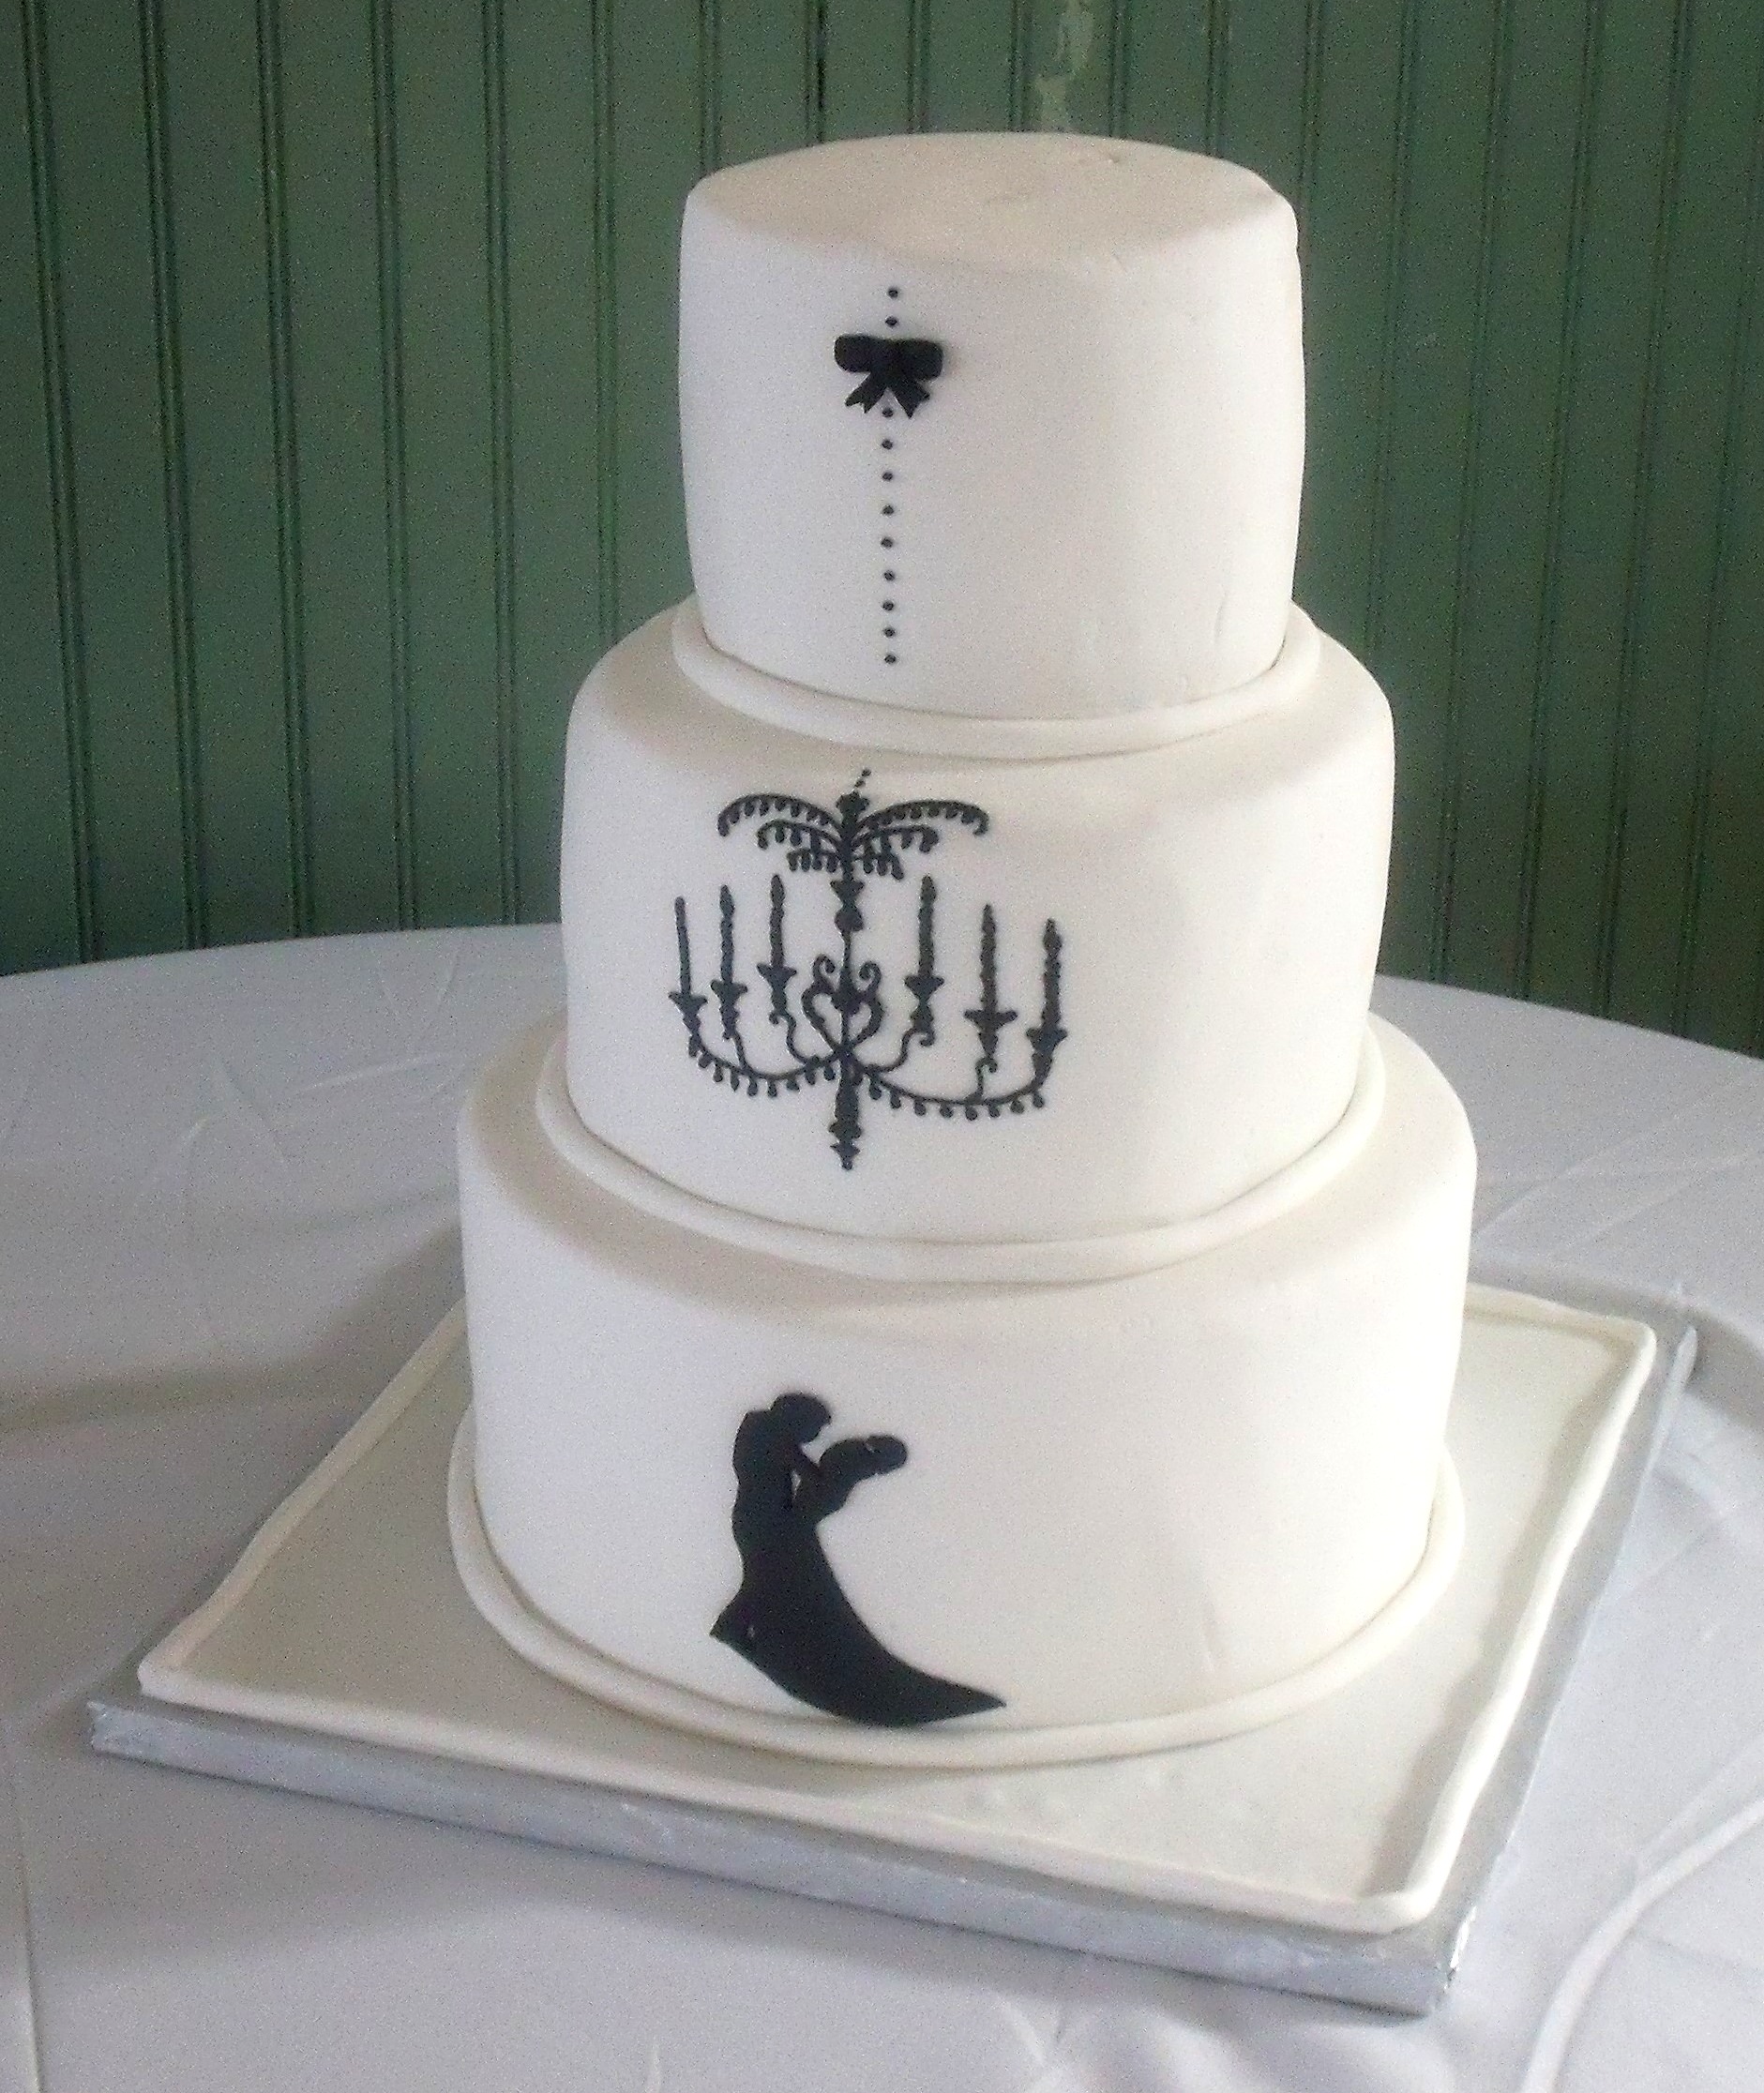 Fondant covered wedding cakes